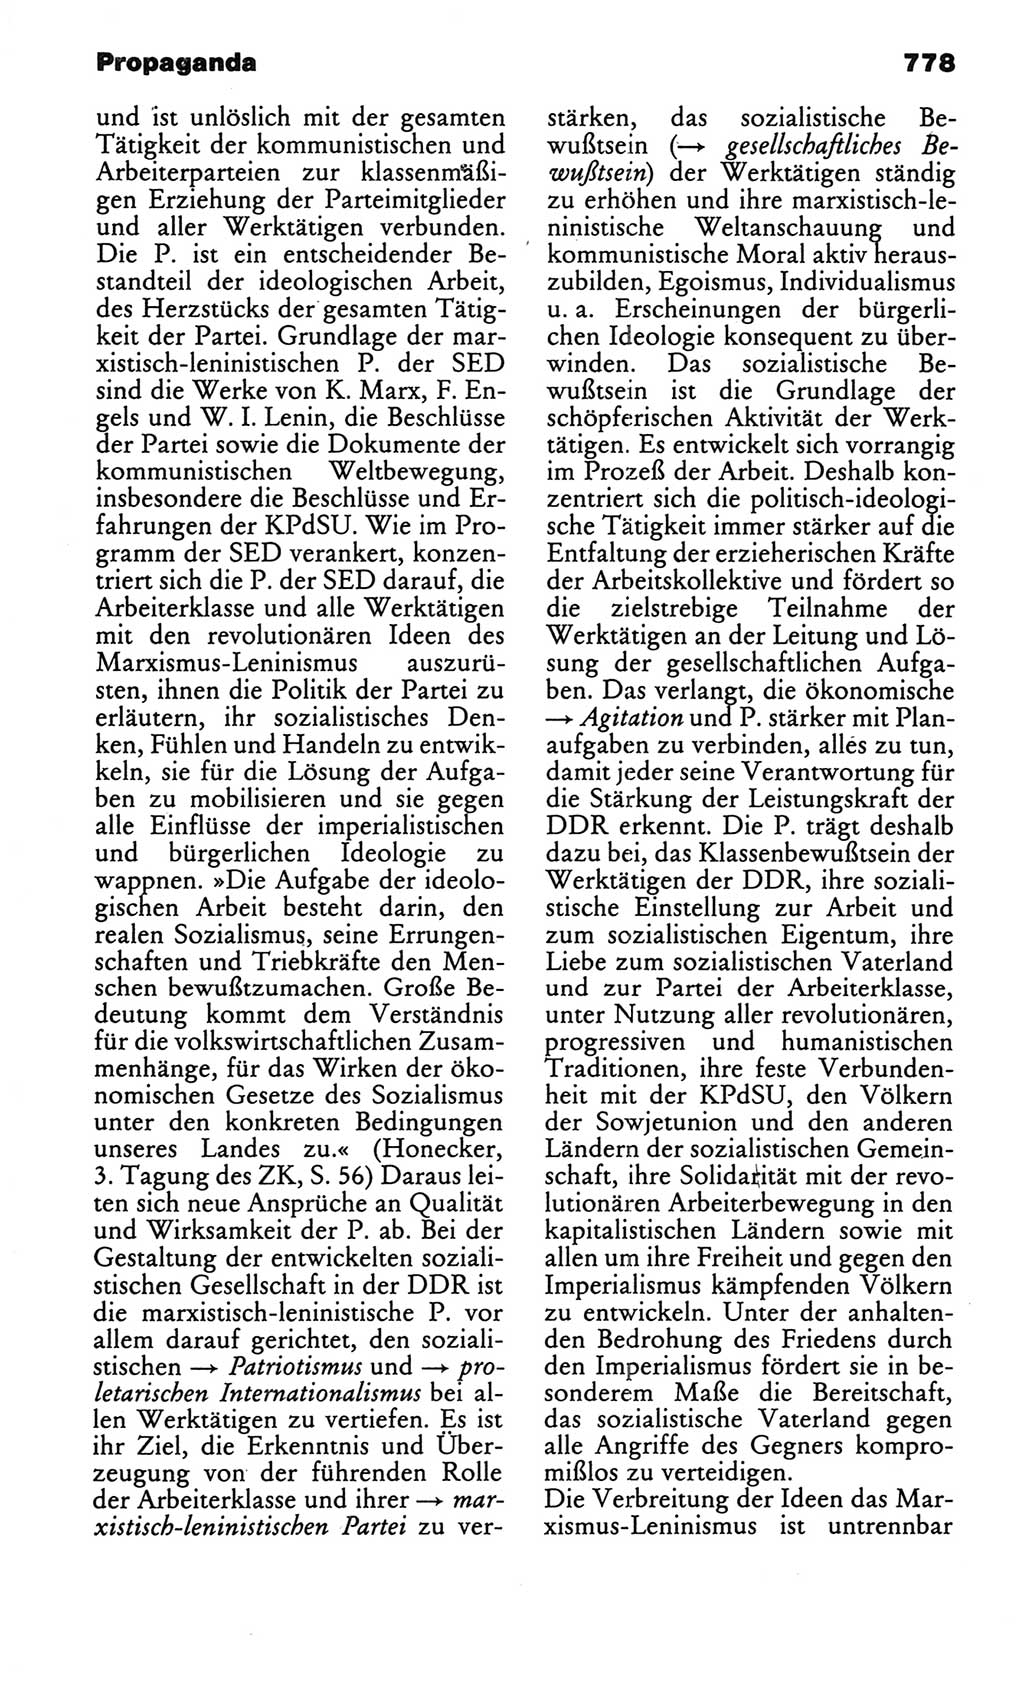 Kleines politisches Wörterbuch [Deutsche Demokratische Republik (DDR)] 1986, Seite 778 (Kl. pol. Wb. DDR 1986, S. 778)